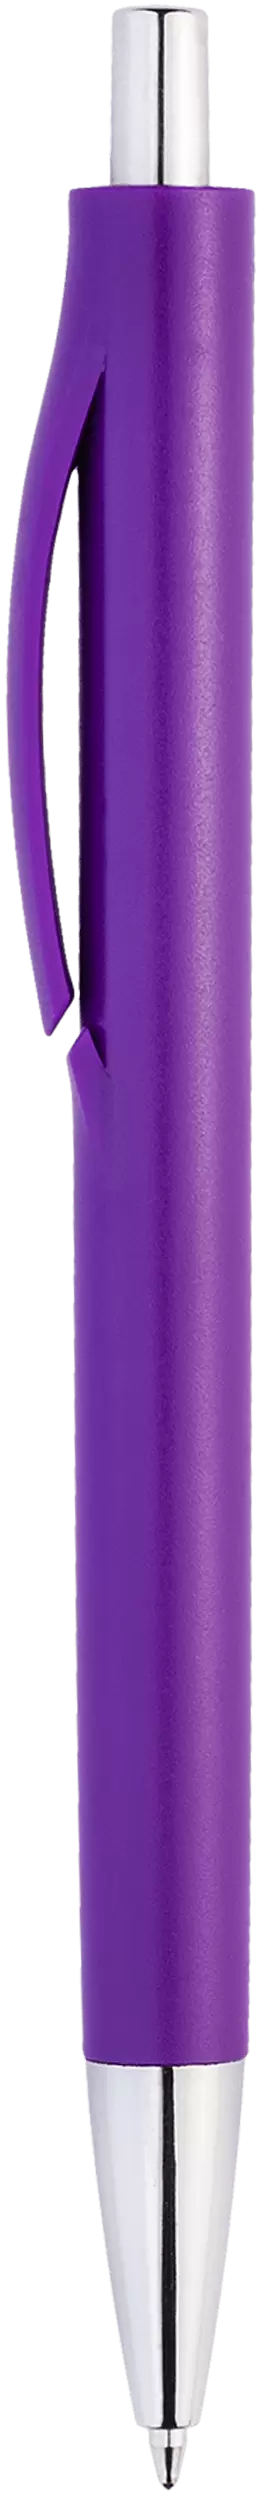 Ручка IGLA CHROME Фиолетовая 1032-11